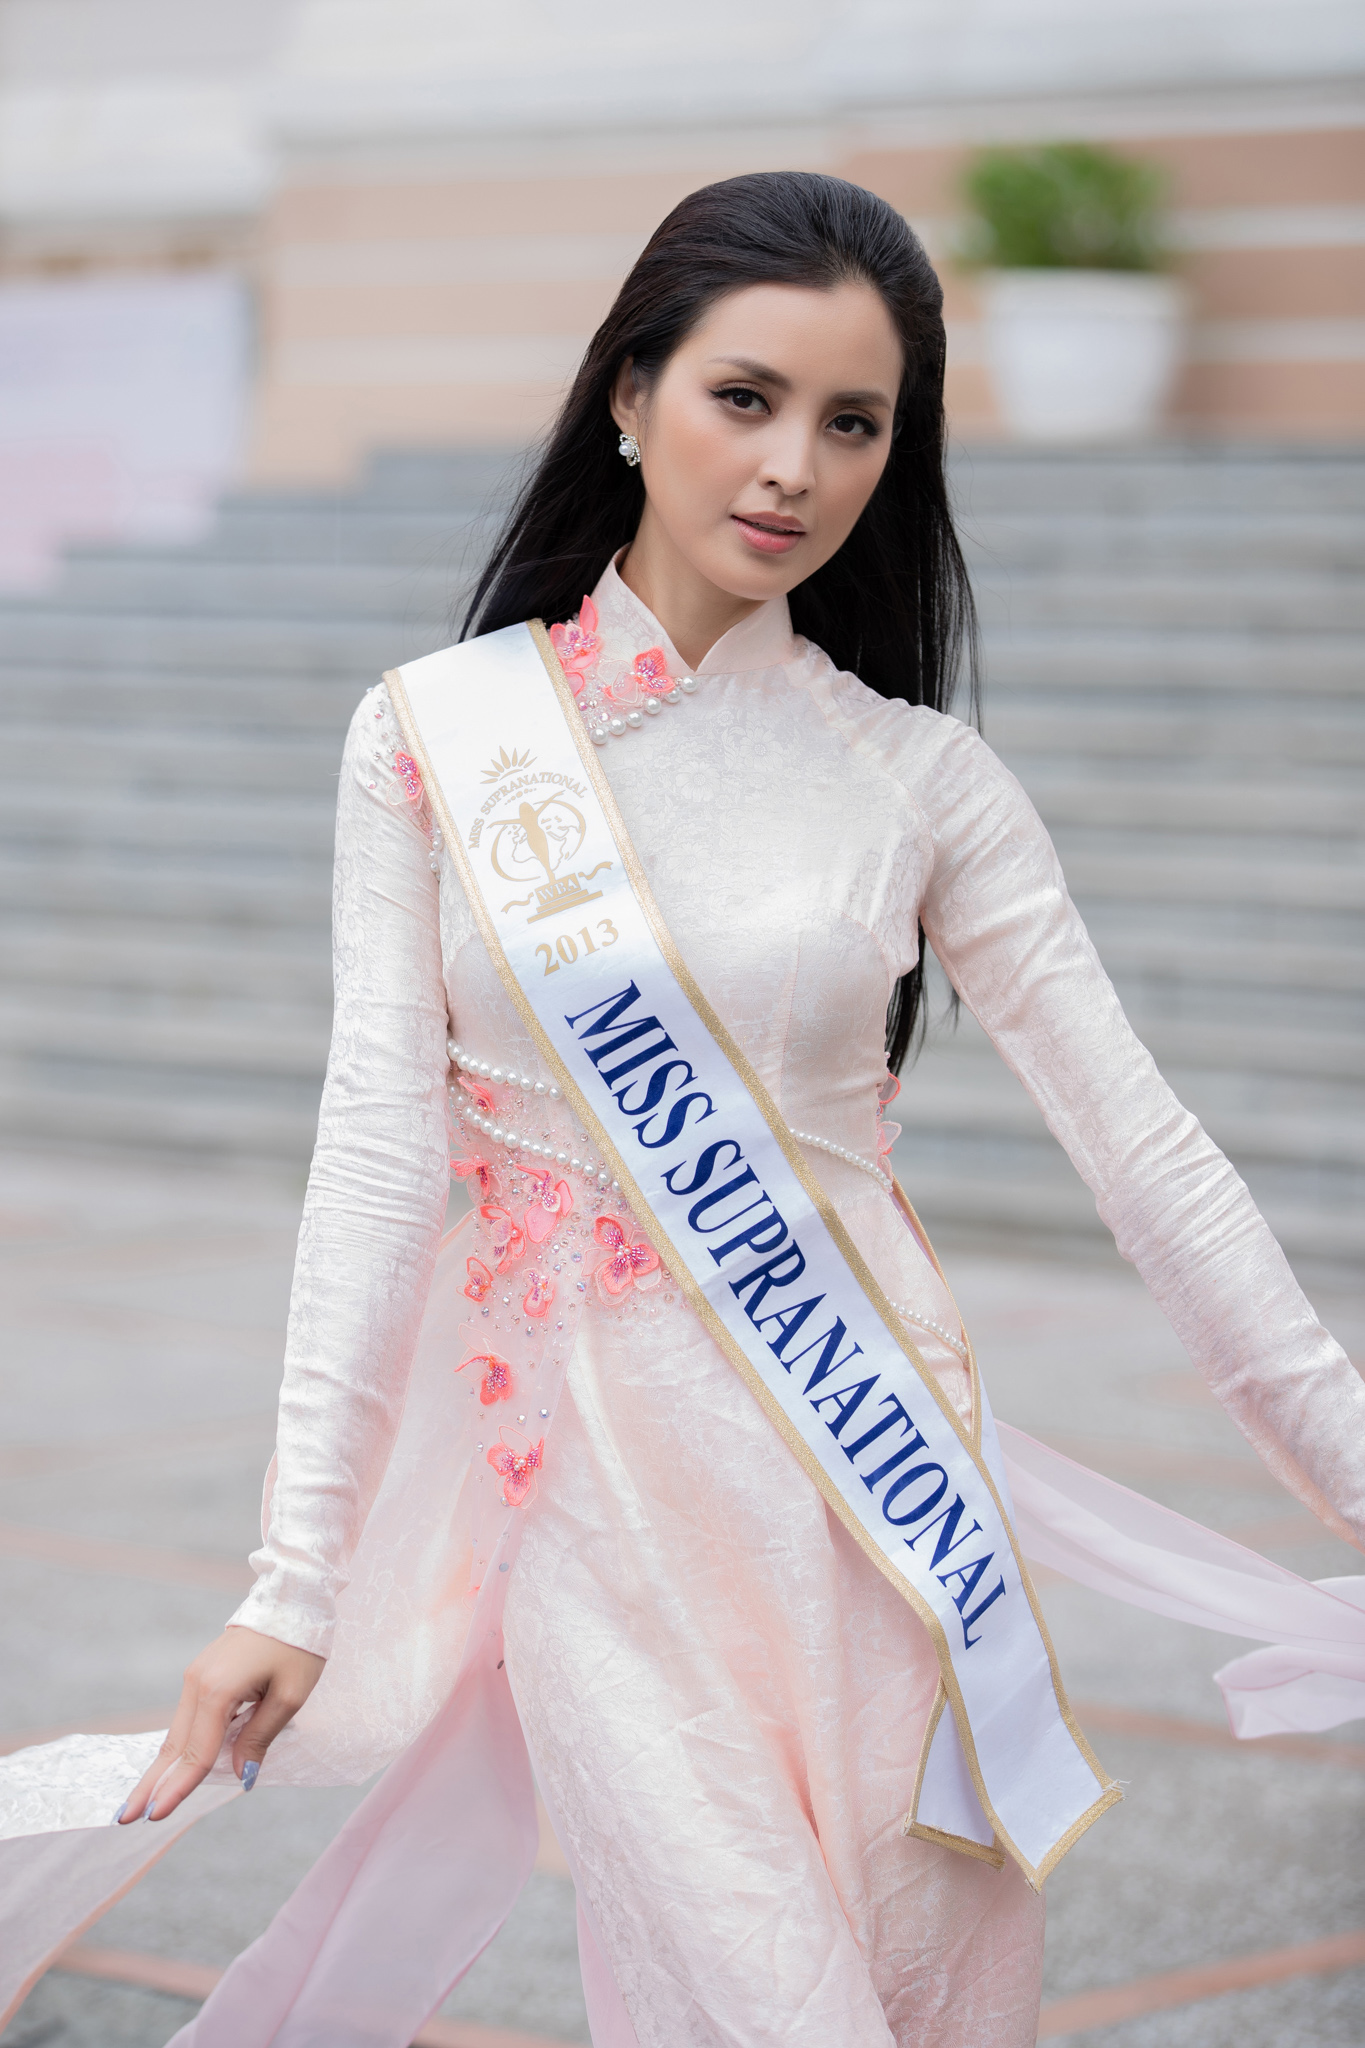 Ngô Nhật Huy: NTK áo dài của các hoa hậu quốc tế khi đến Việt Nam - ảnh 3